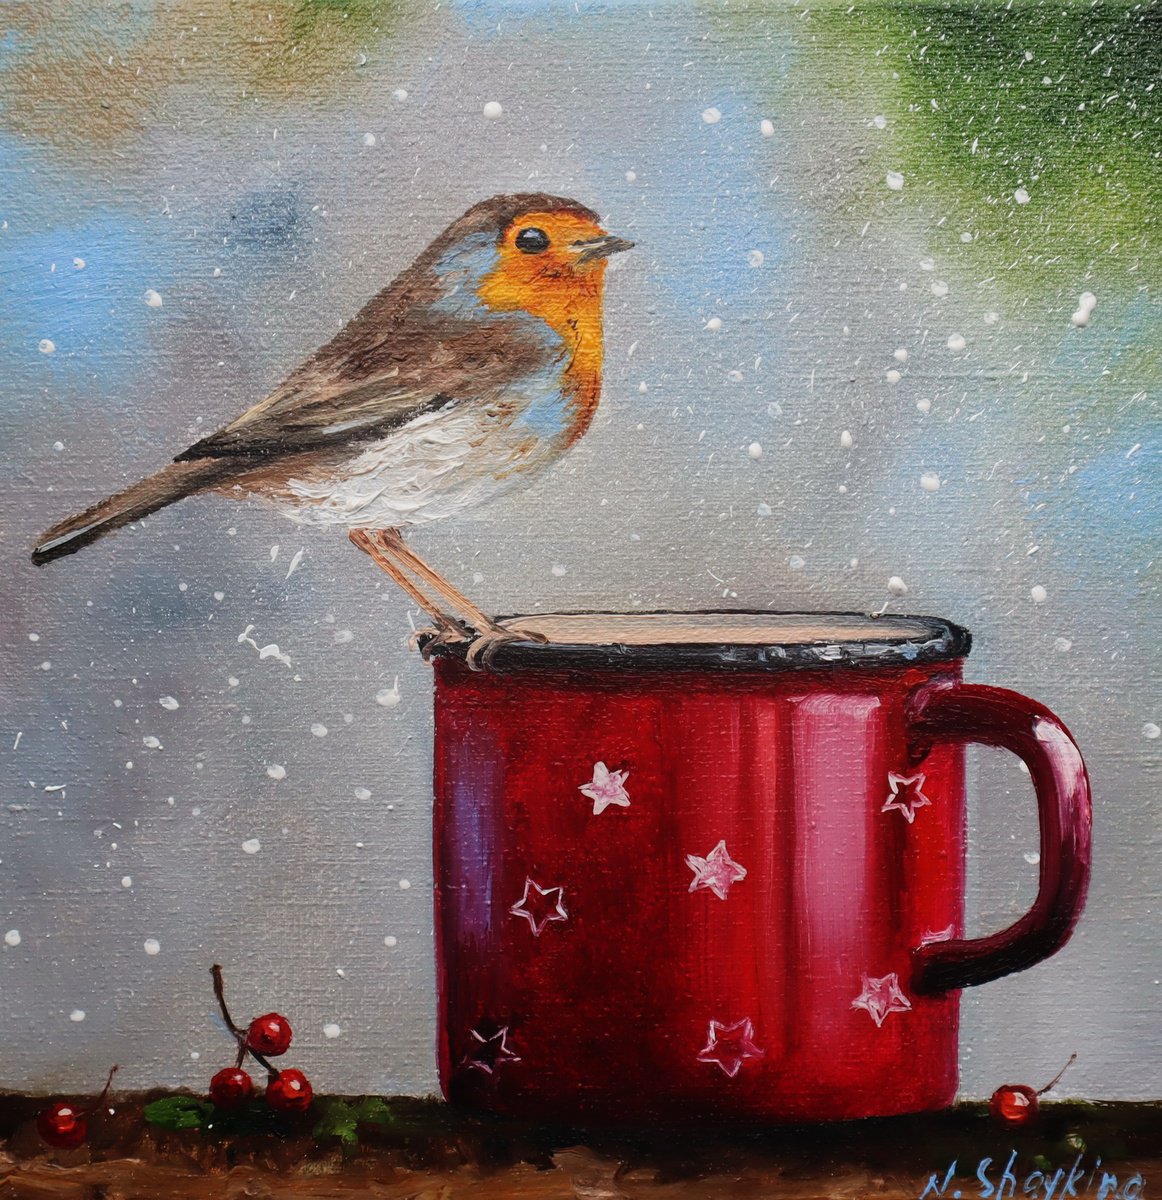 Winter Robin Bird, Xmas Art by Natalia Shaykina